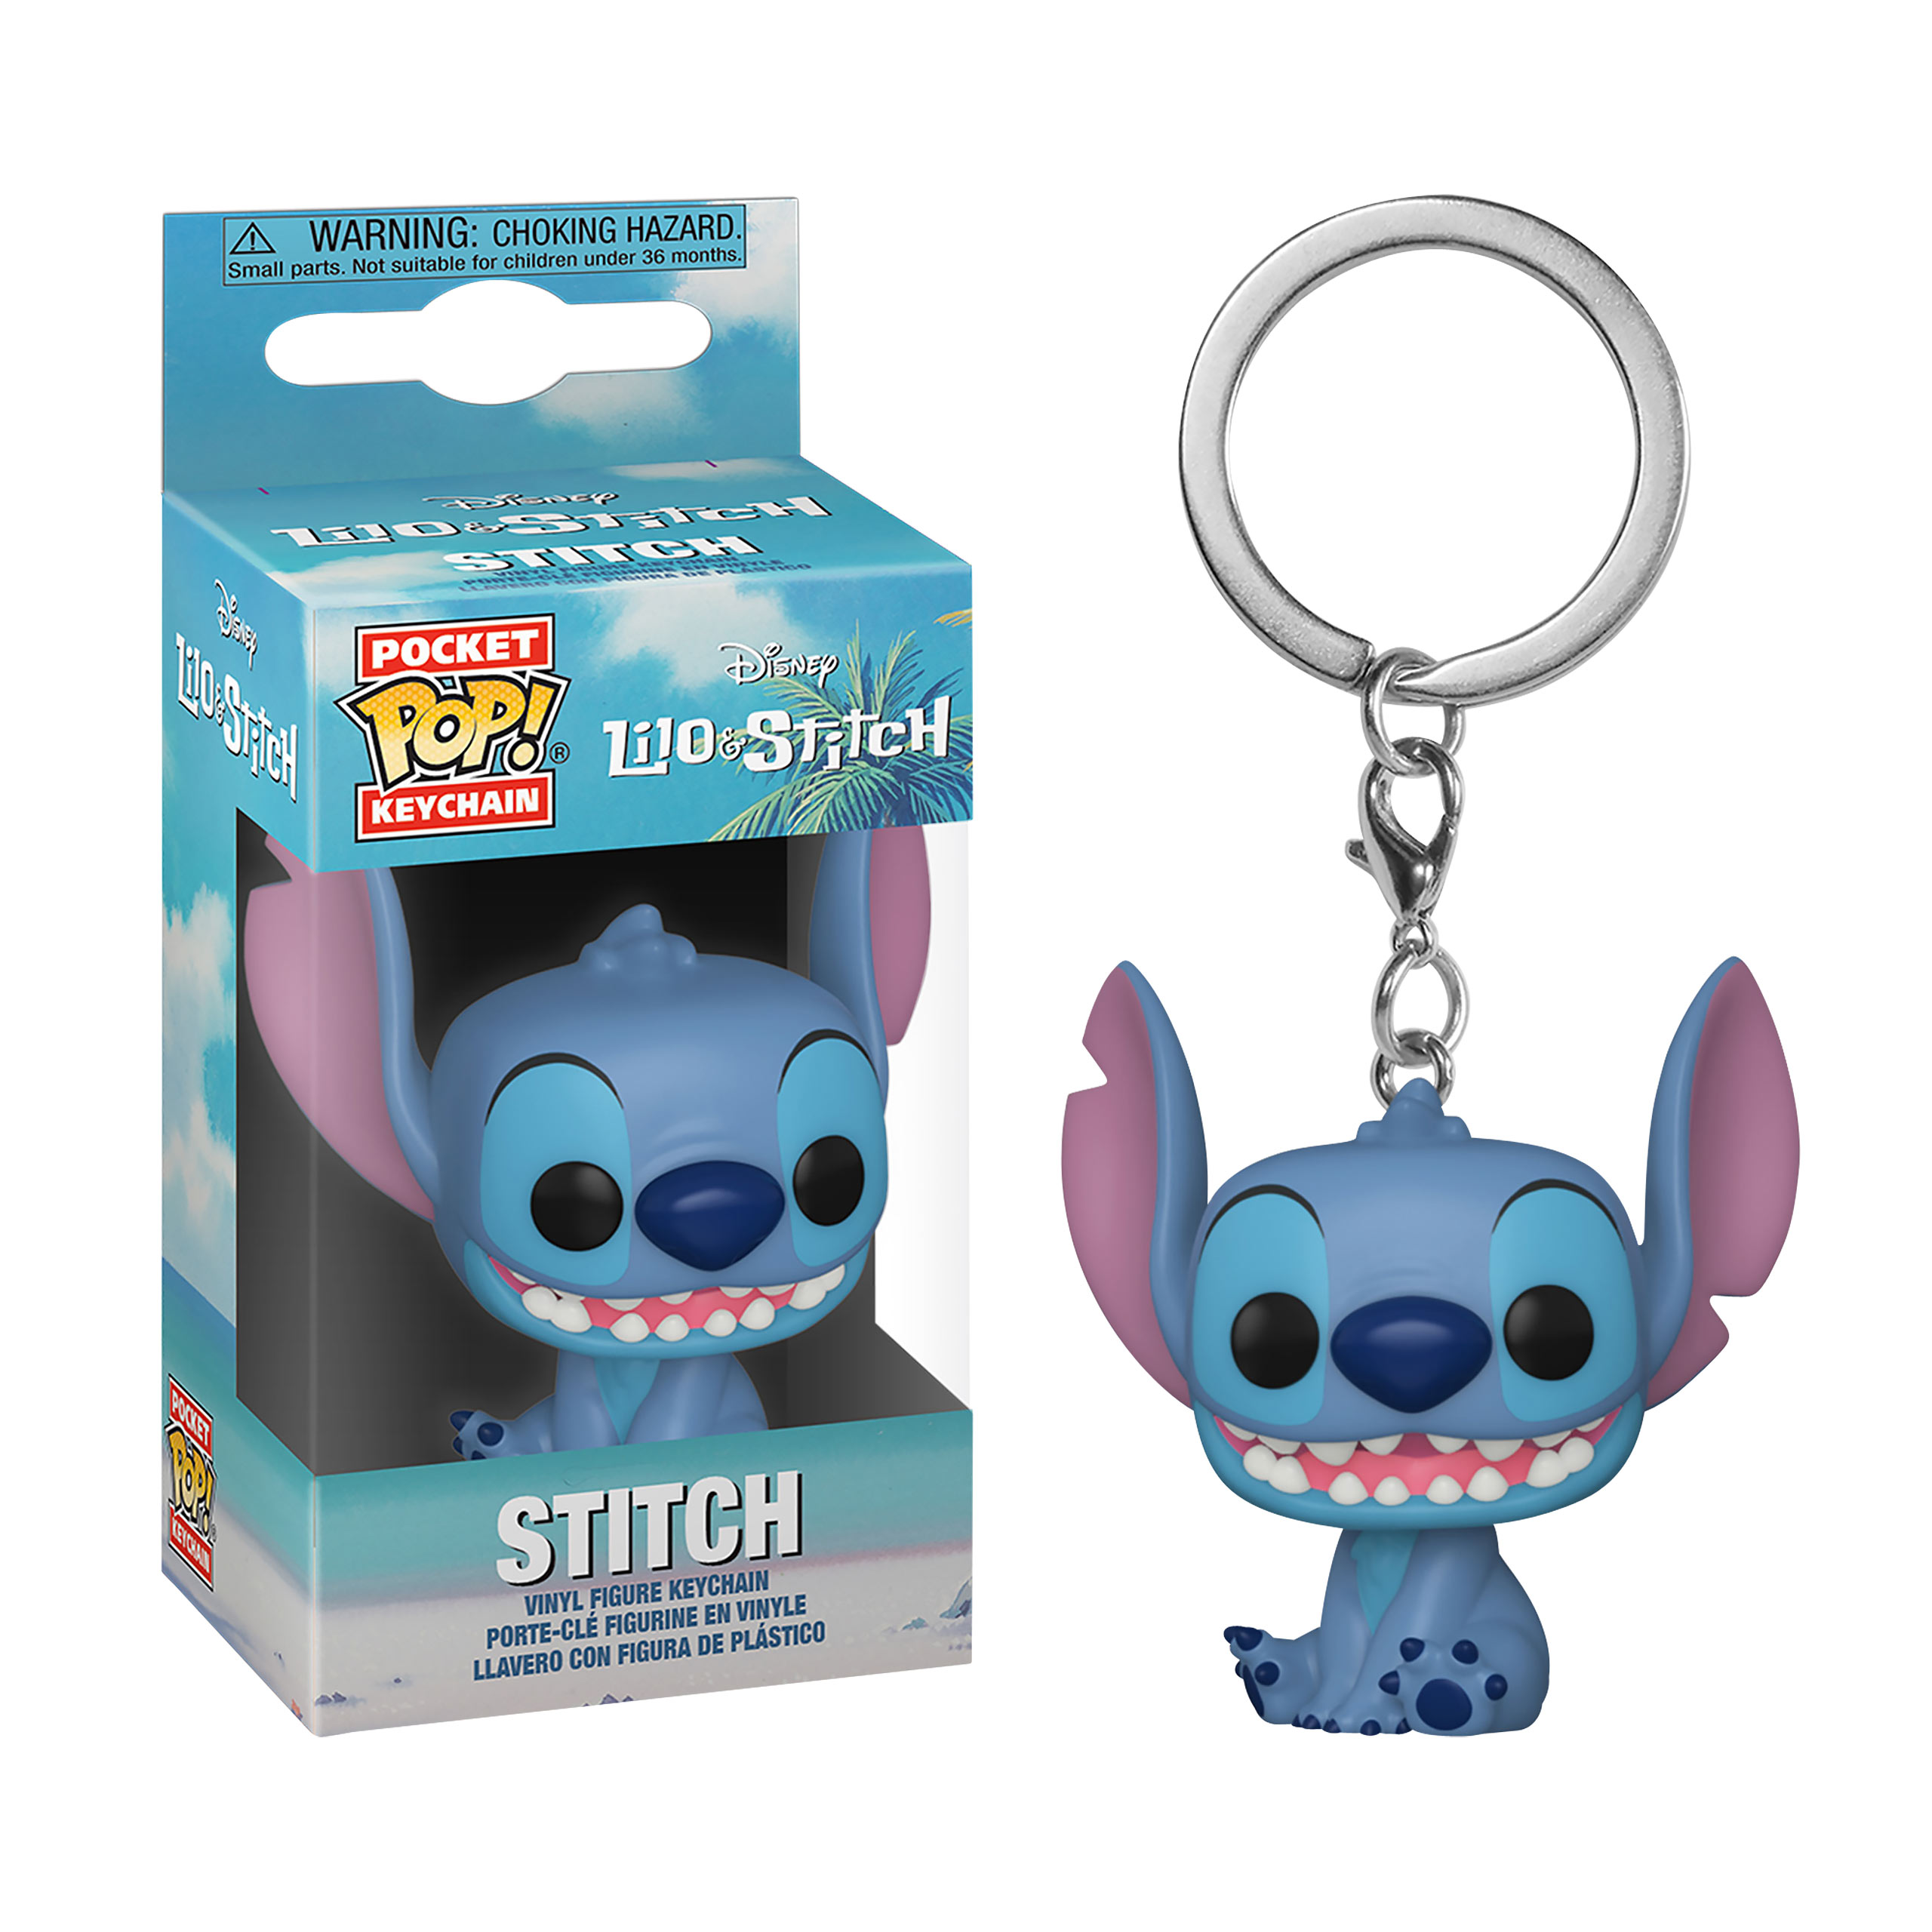 Lilo & Stitch - Smiling Stitch Funko Pop Keychain